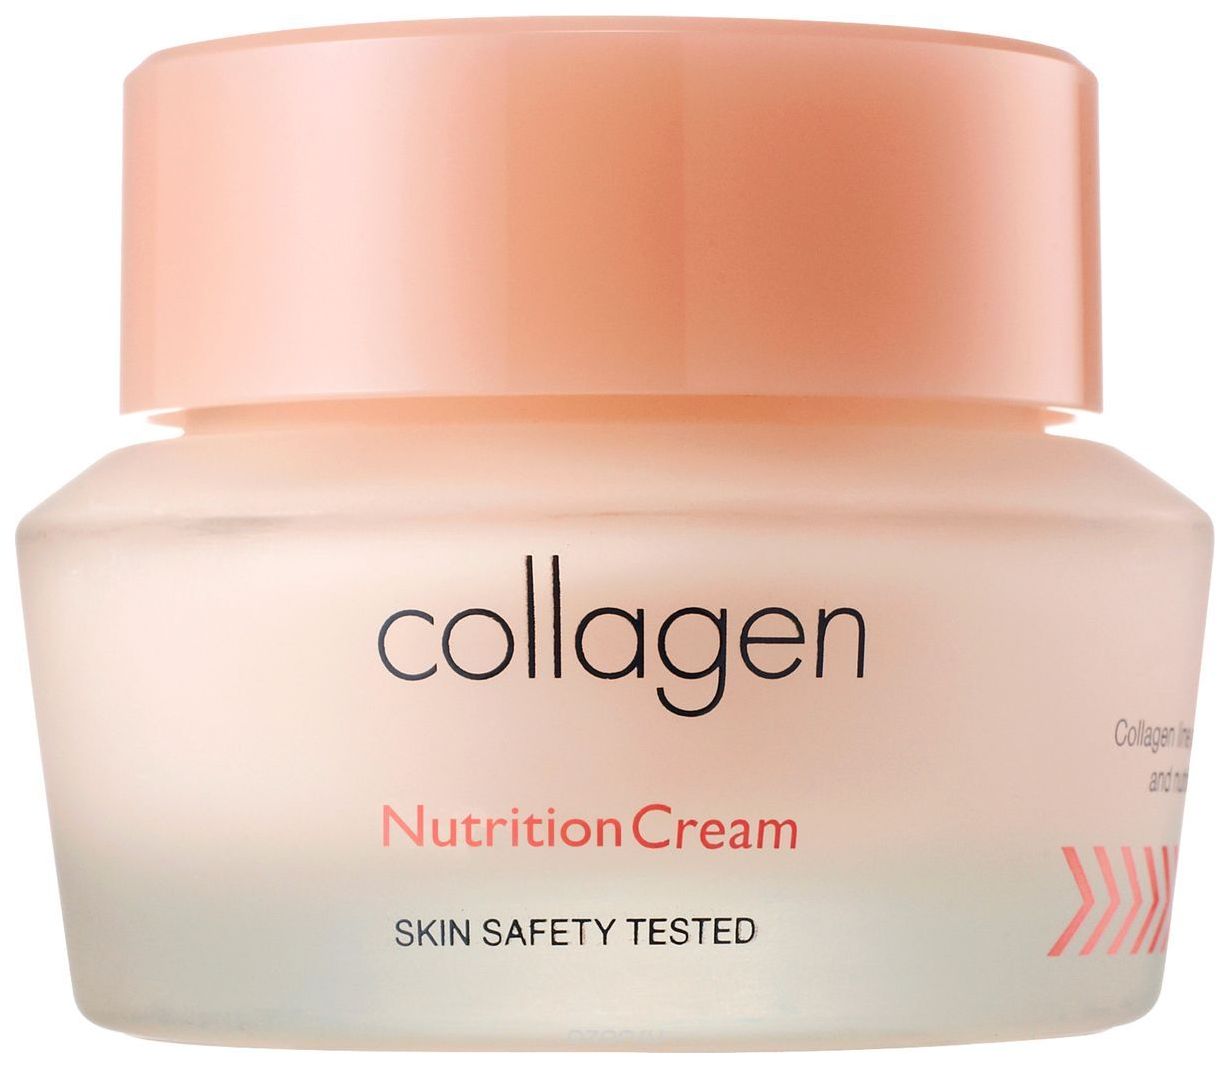 Купить Крем для лица It's Skin питательный «Коллаген» 50 мл, Питательный крем для лица Collagen Nutrition Cream